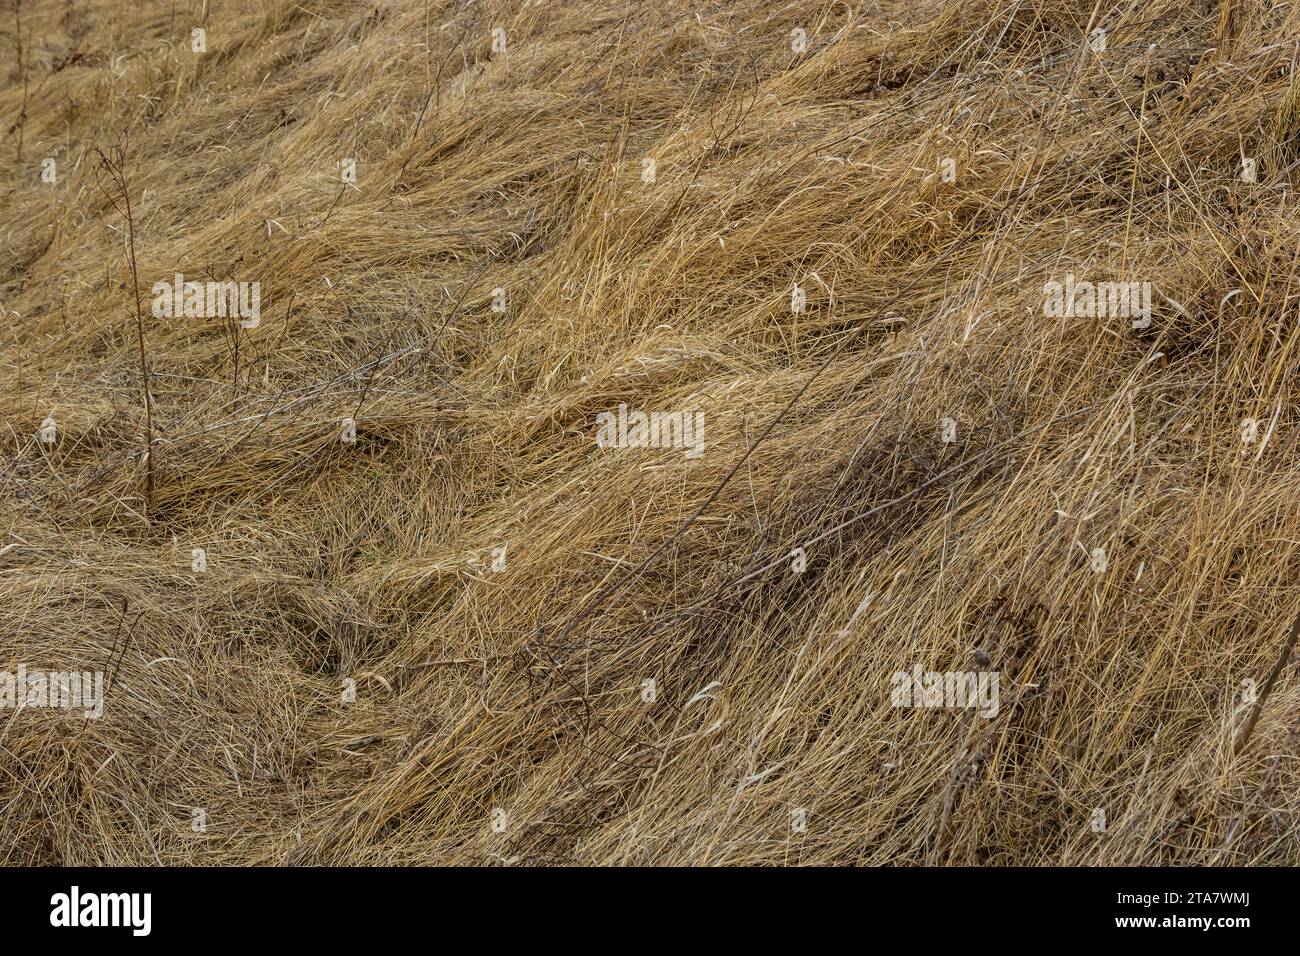 Erba secca, schiacciata dal vento e dalla pioggia, si trova in un campo. Erba morta gialla, sfondo naturale. Foto Stock